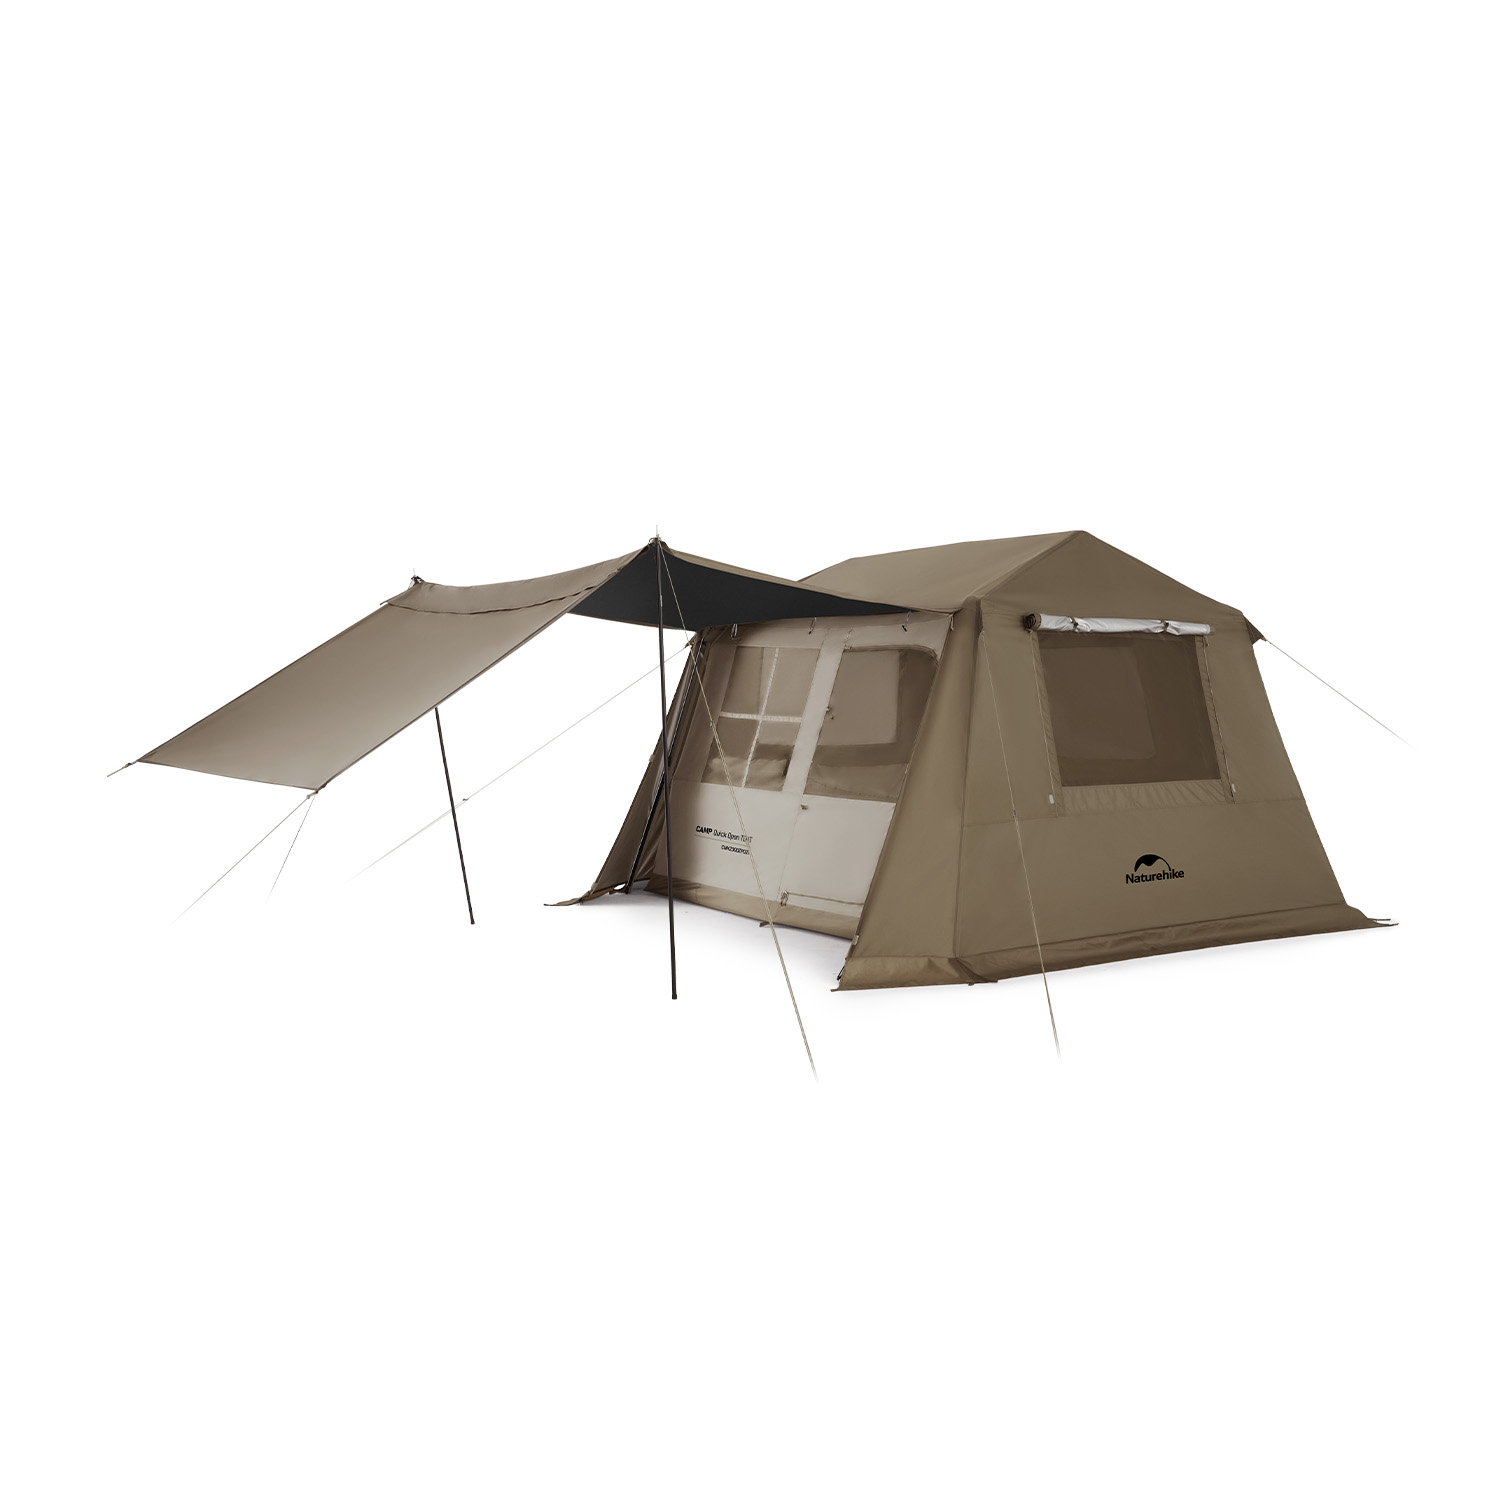 割引価格ドーム型テント ゆったり4人用 フルクローズで個室空間 テント 3-4 その他